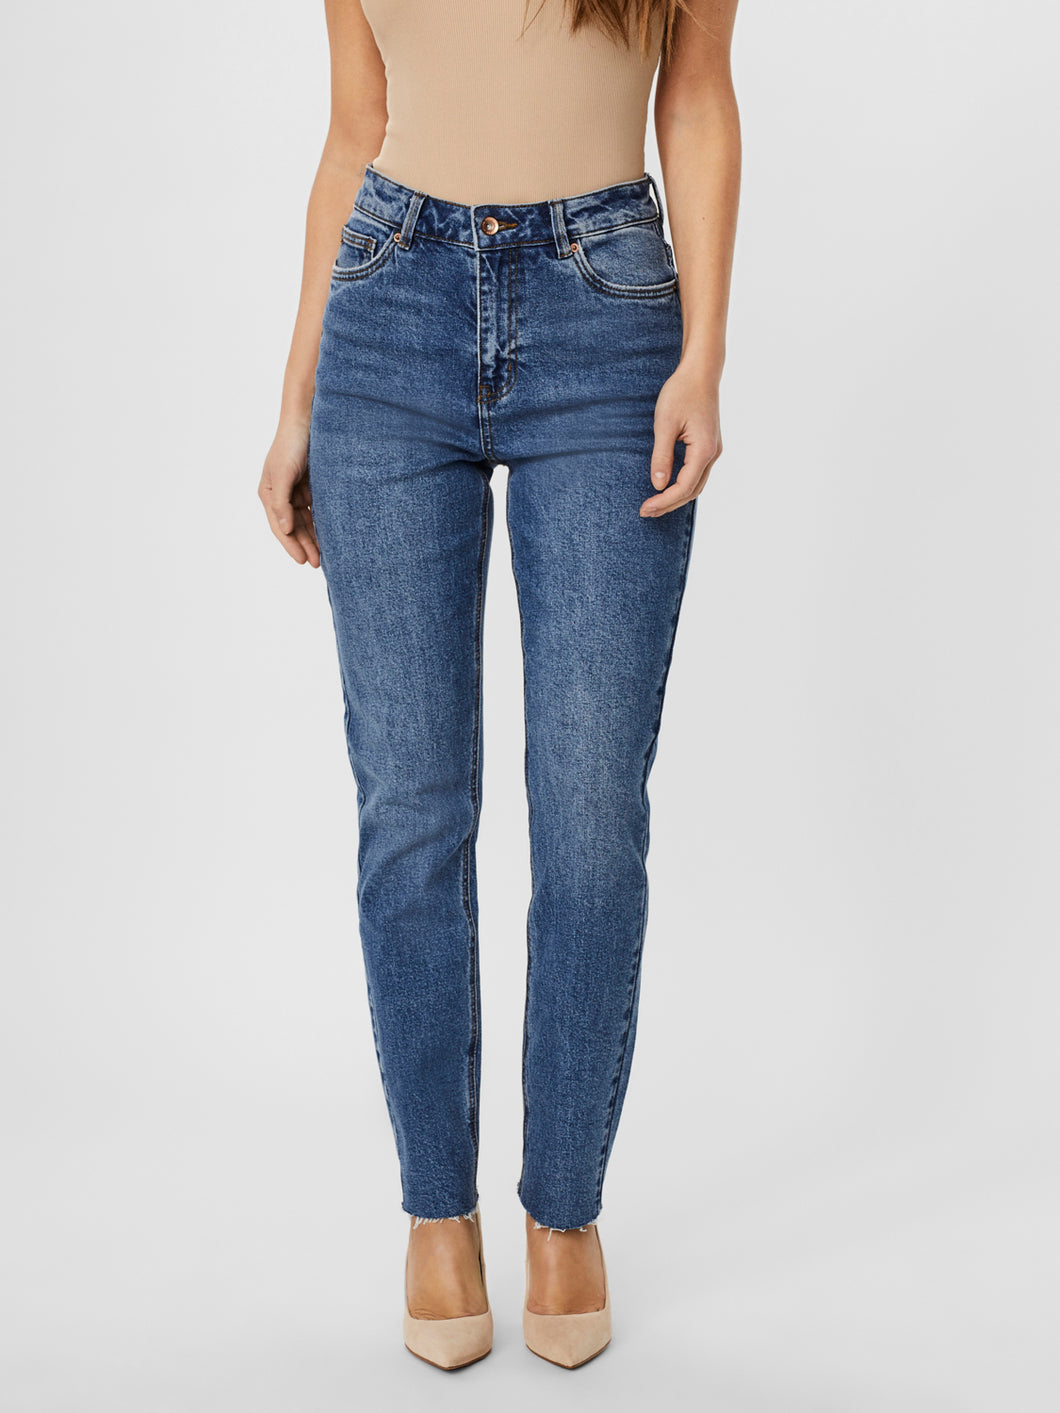 VMBRENDA Jeans - Medium Blue Denim